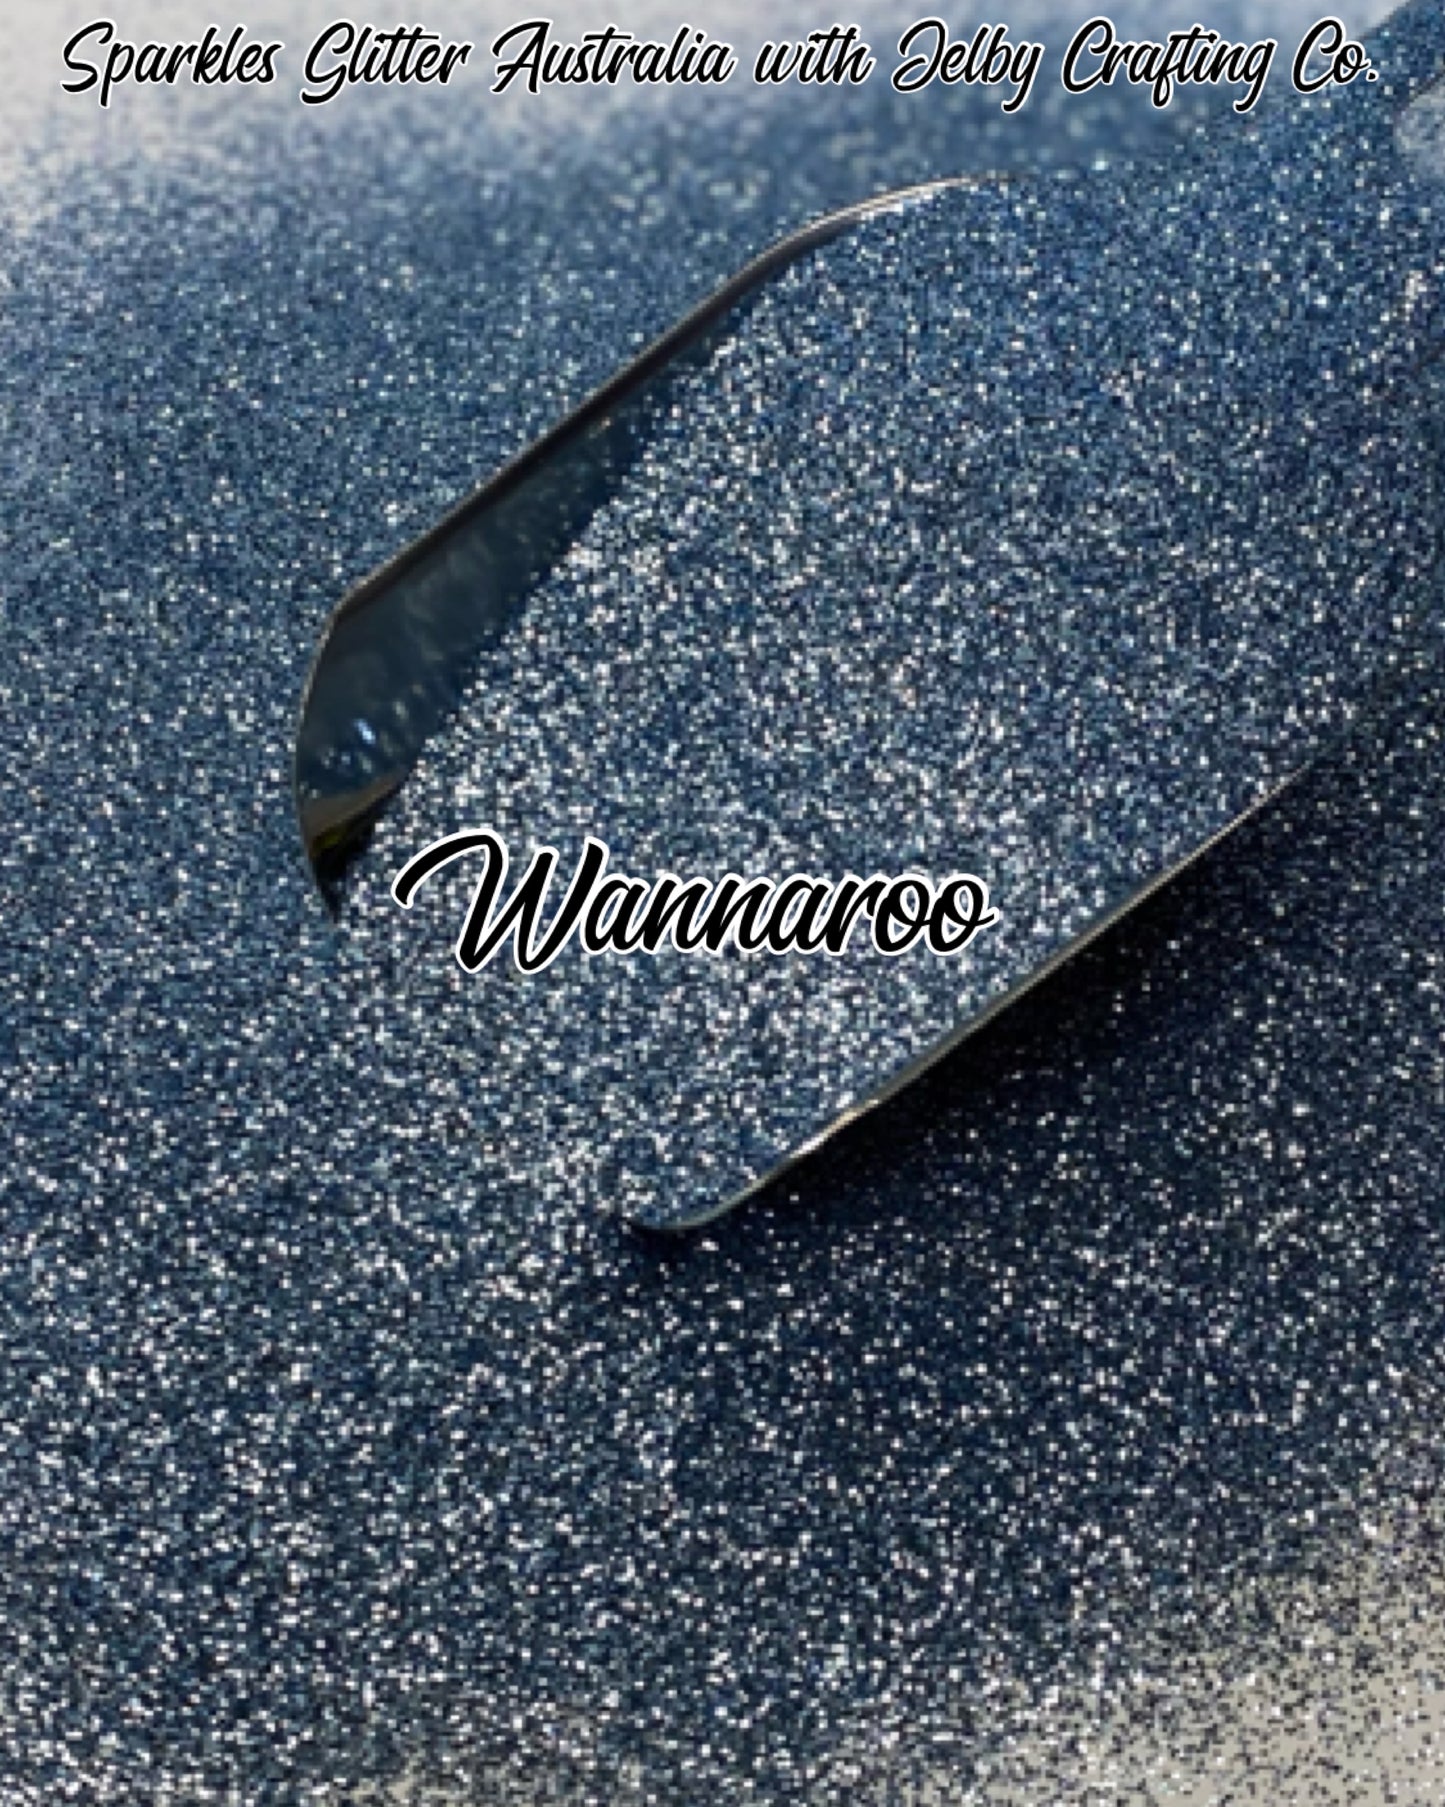 Wannaroo | Metallic Fine Cut Blue Glitter